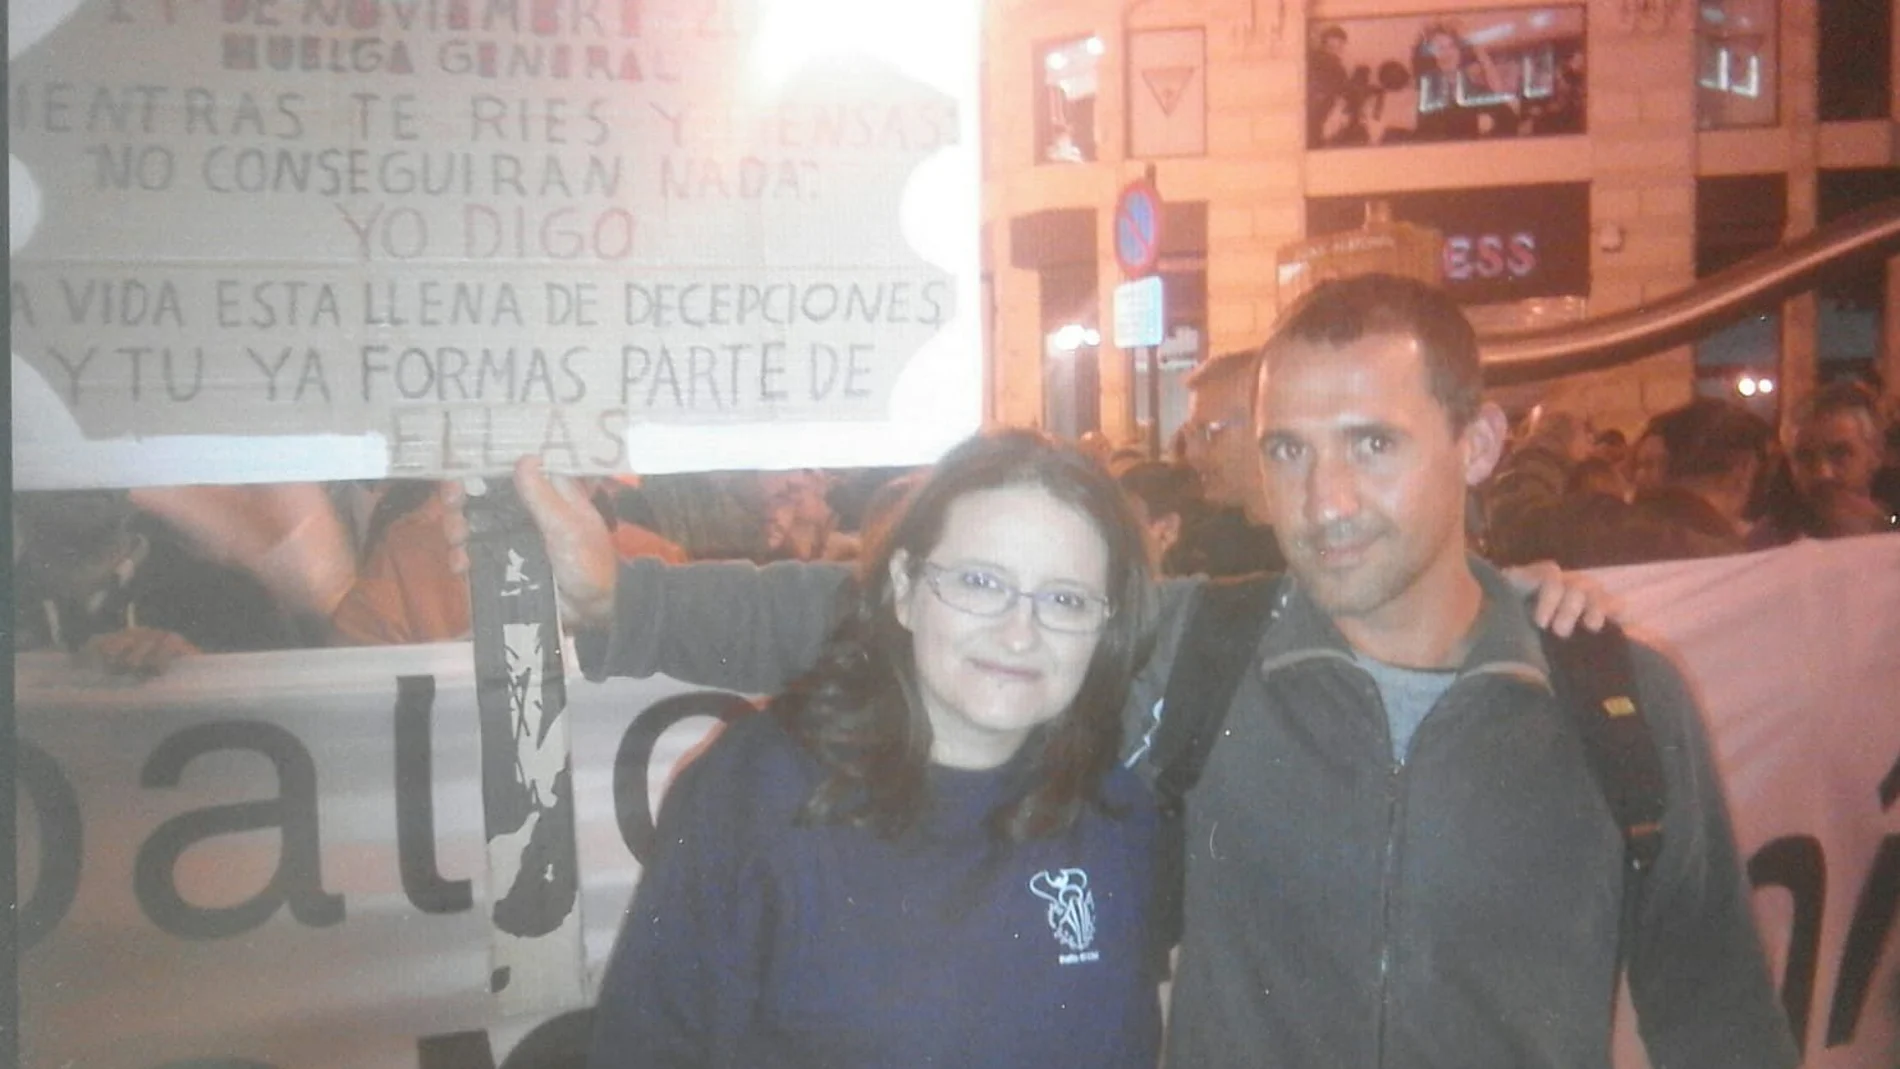 El afectado se fotografió con la consellera de Política de Igualdad, Mónica Oltra en 2014, cuando dice que confiaba en ella